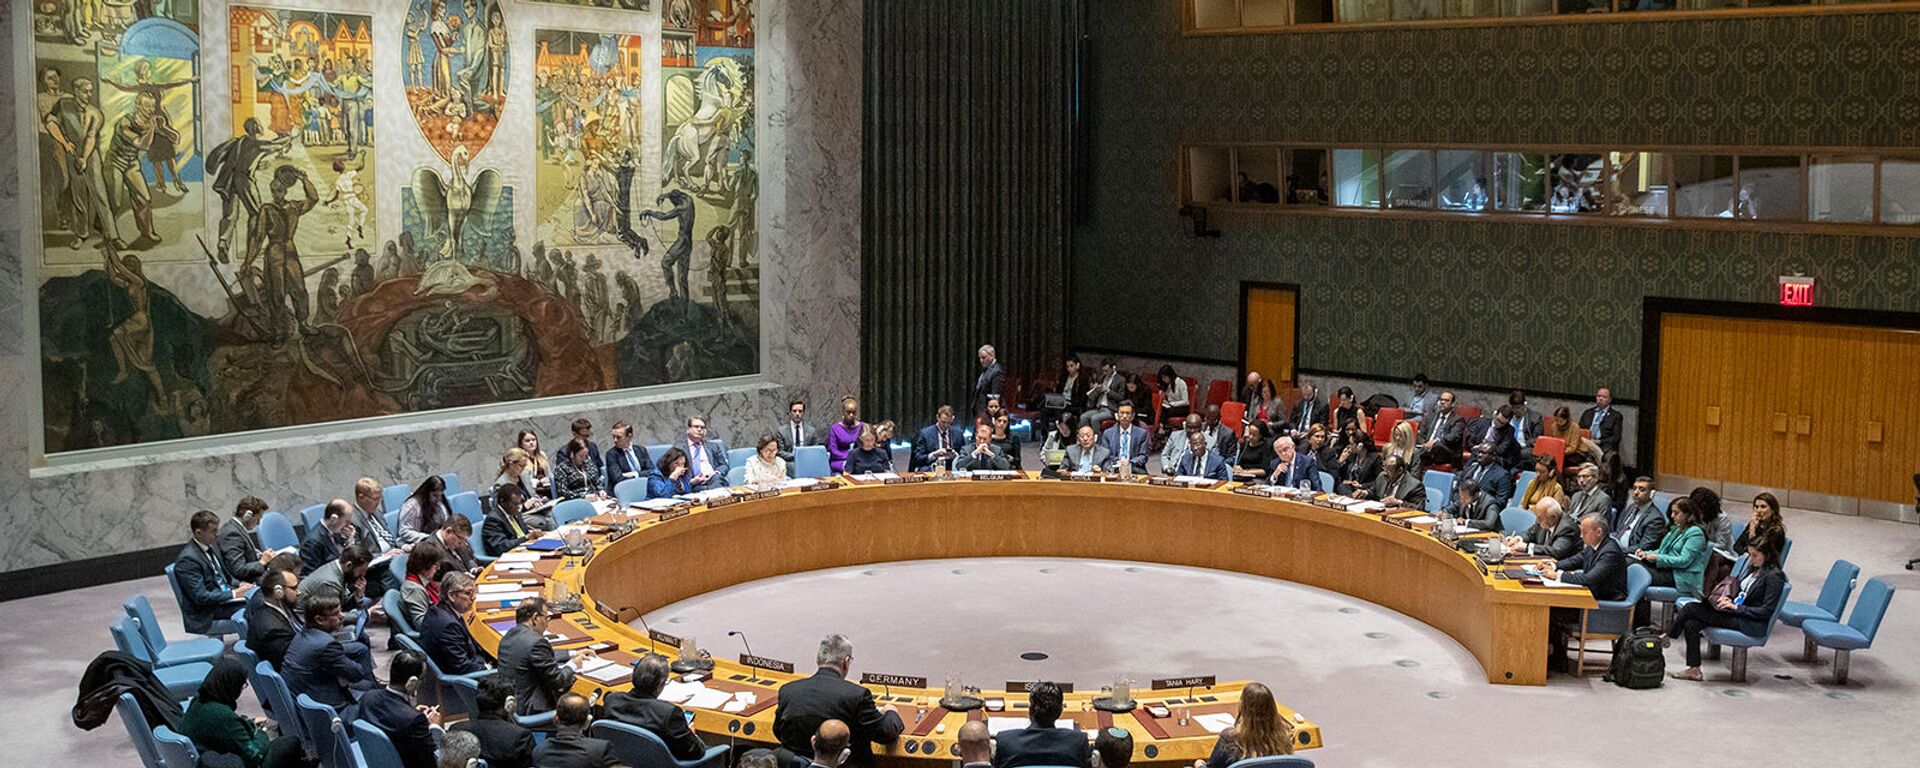 Совет Безопасности ООН проводит заседание по Ближнему Востоку (20 ноября 2019). Нью-Йорк - Sputnik Армения, 1920, 30.09.2020